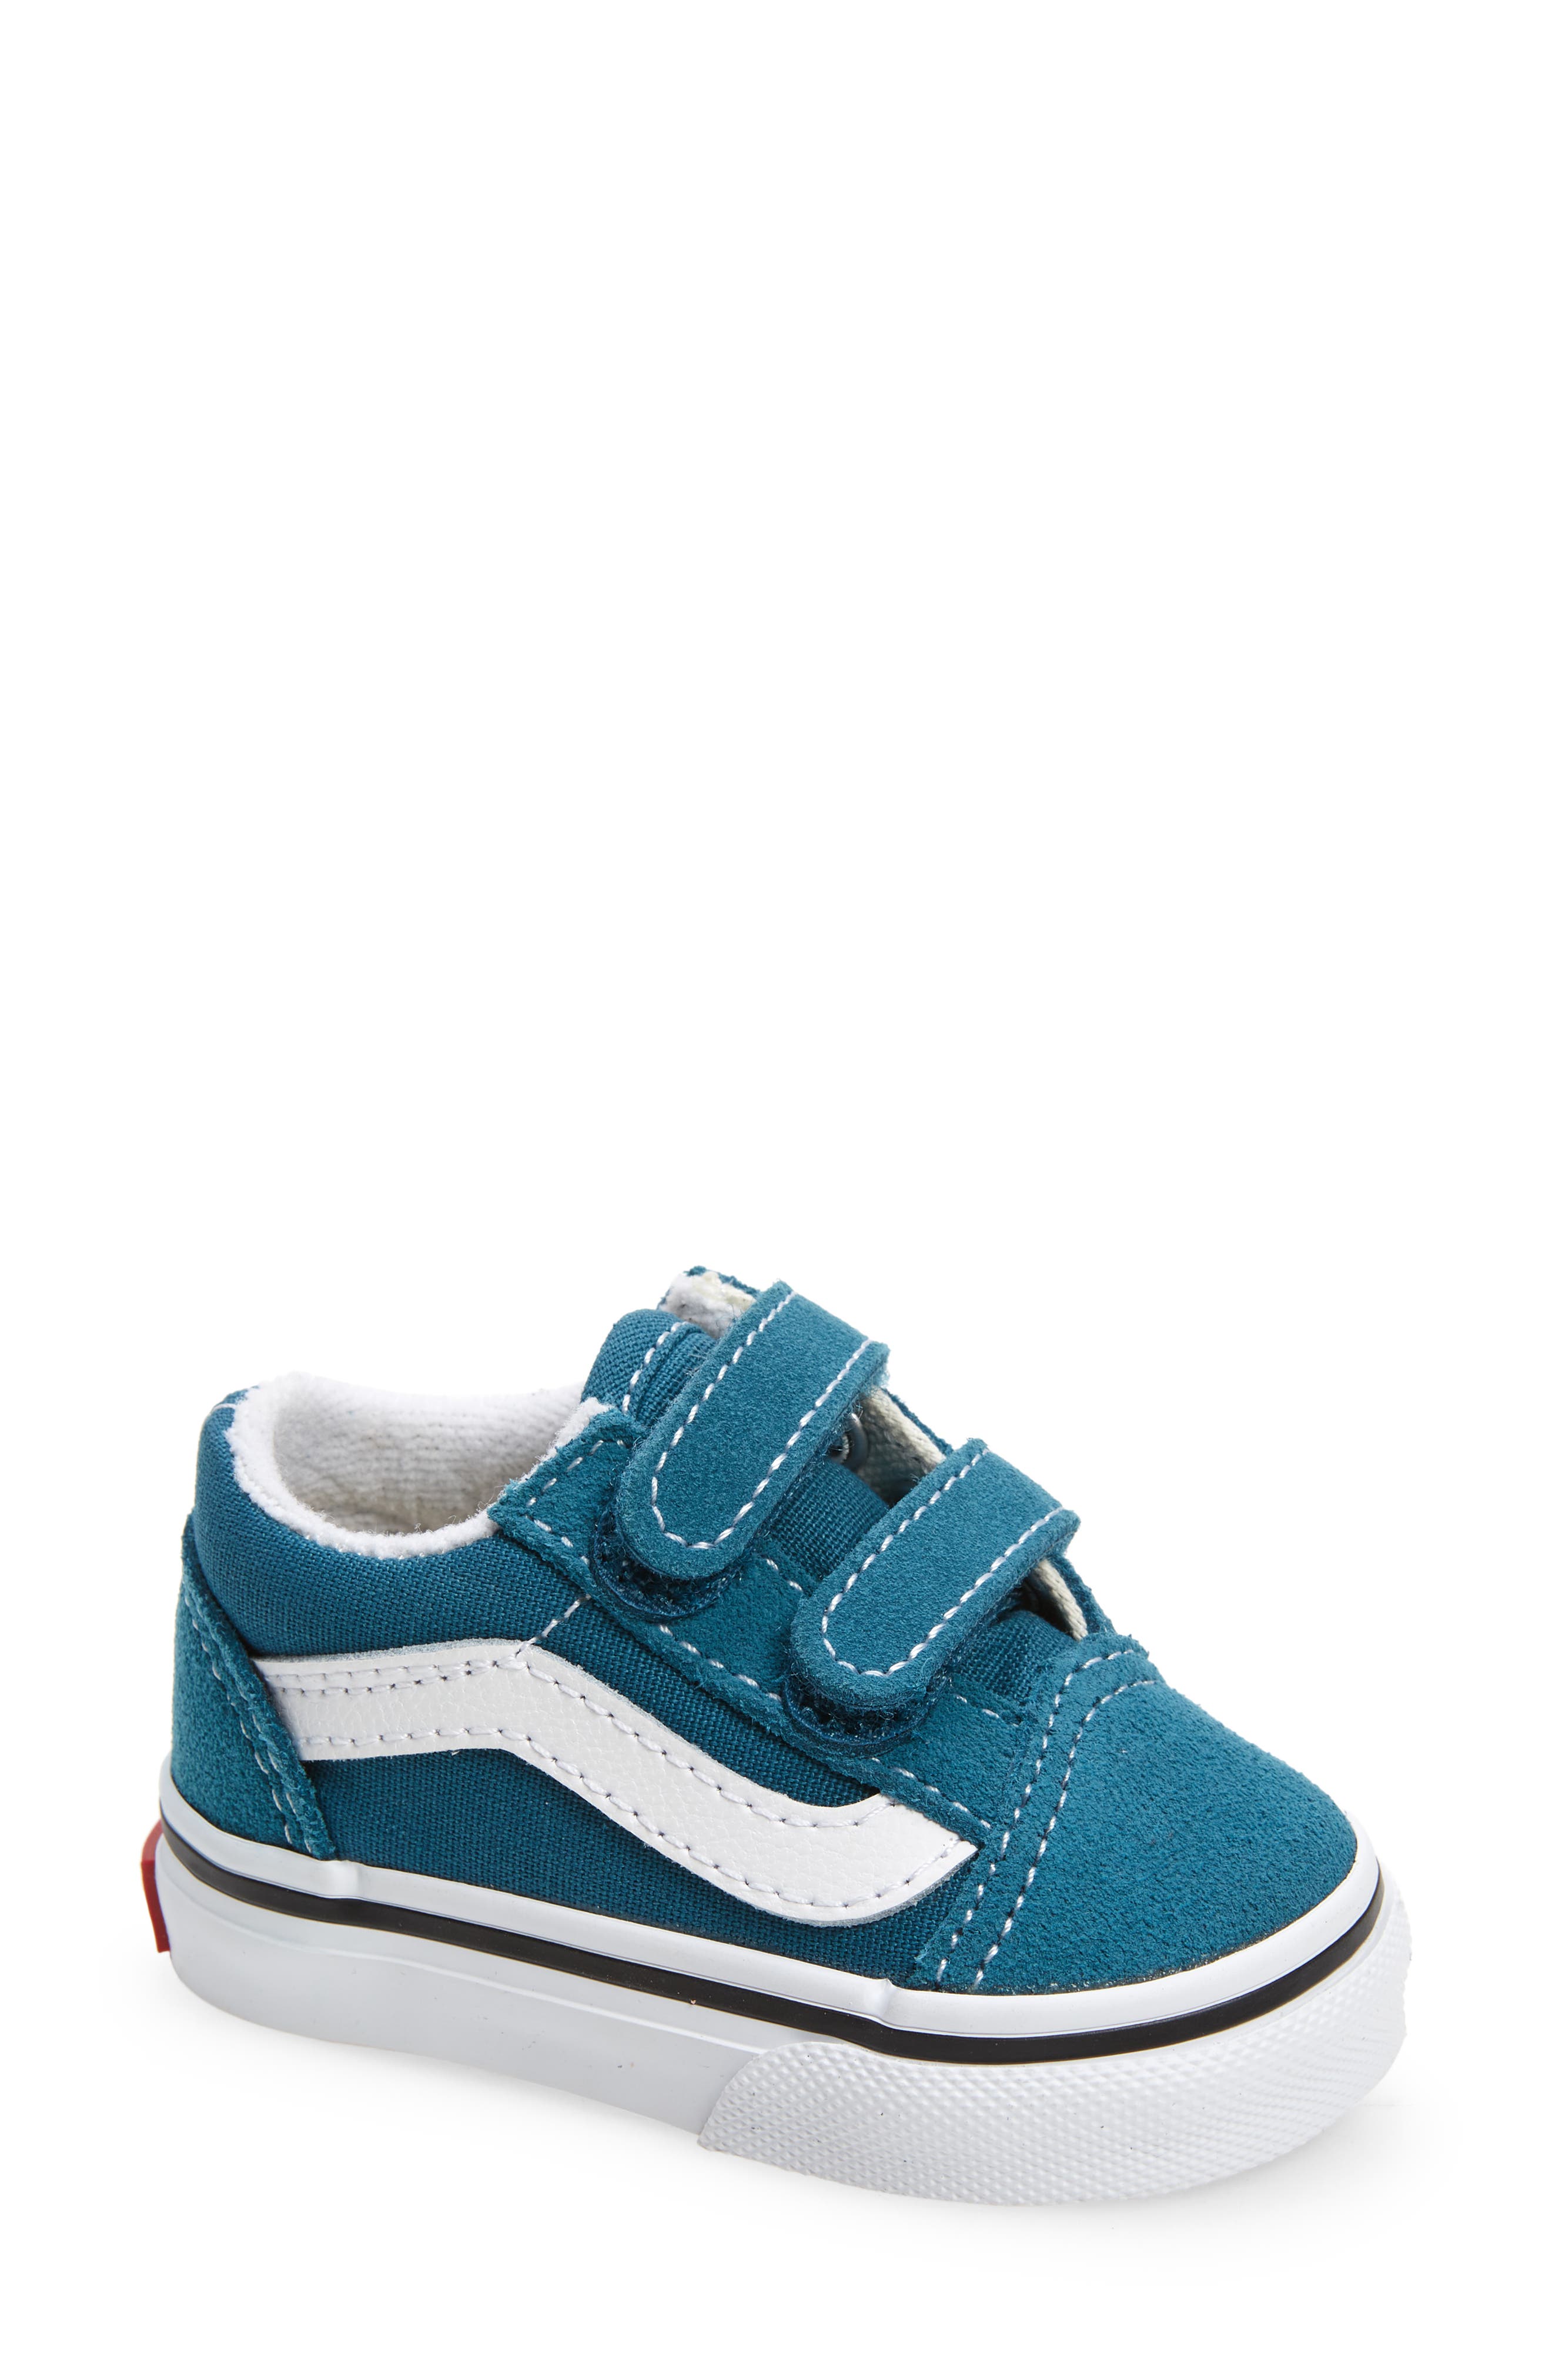 baby van shoes